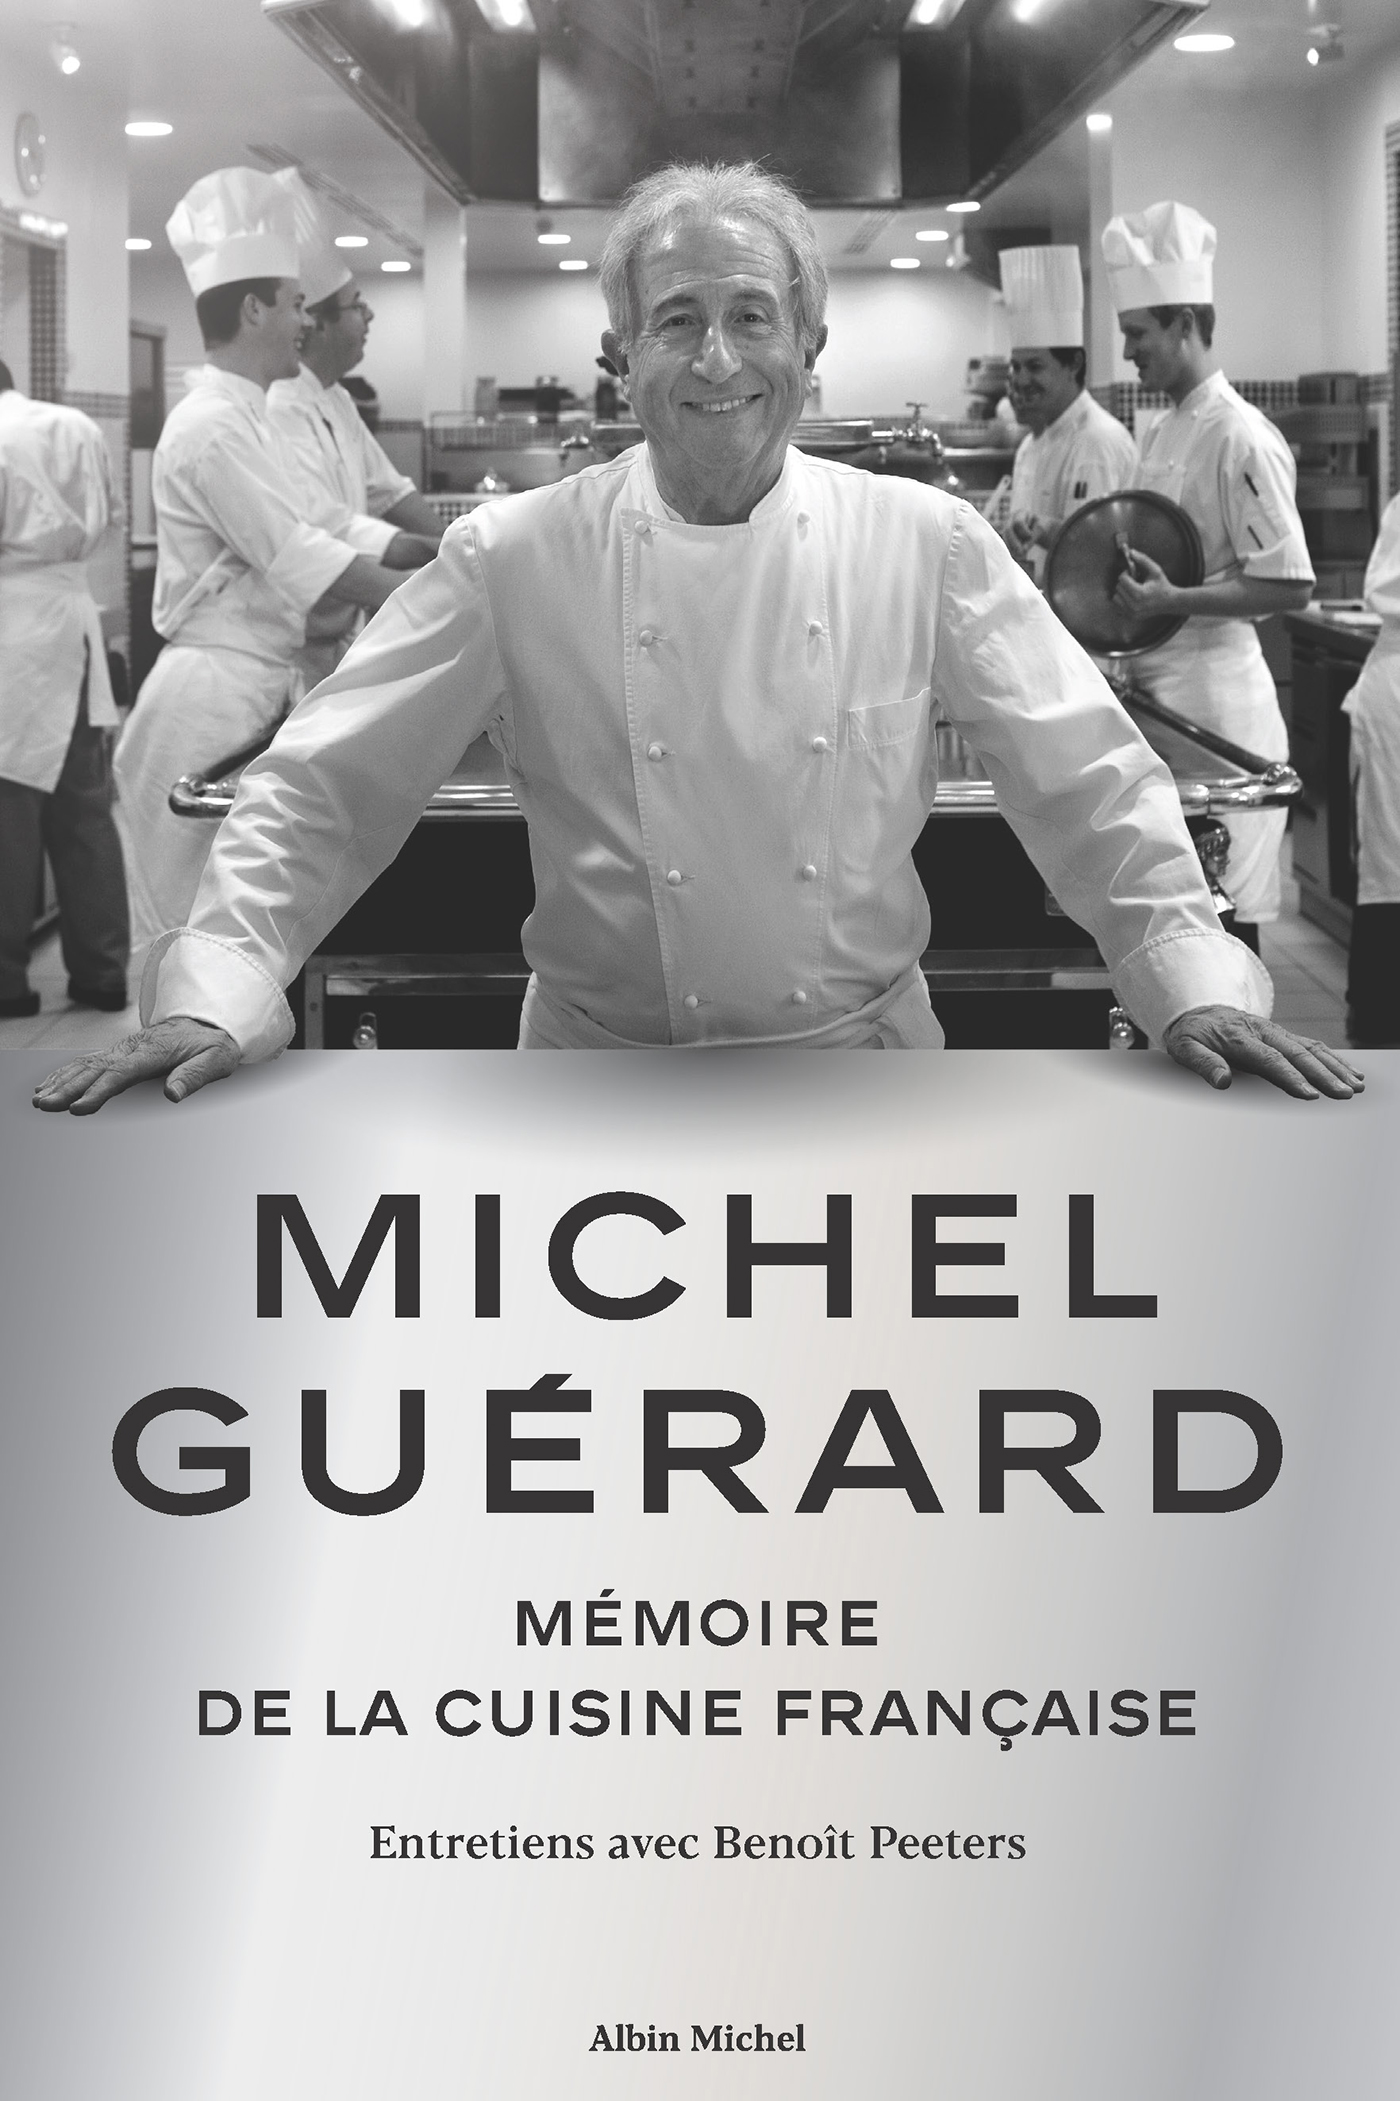 Couverture du livre Michel Guérard